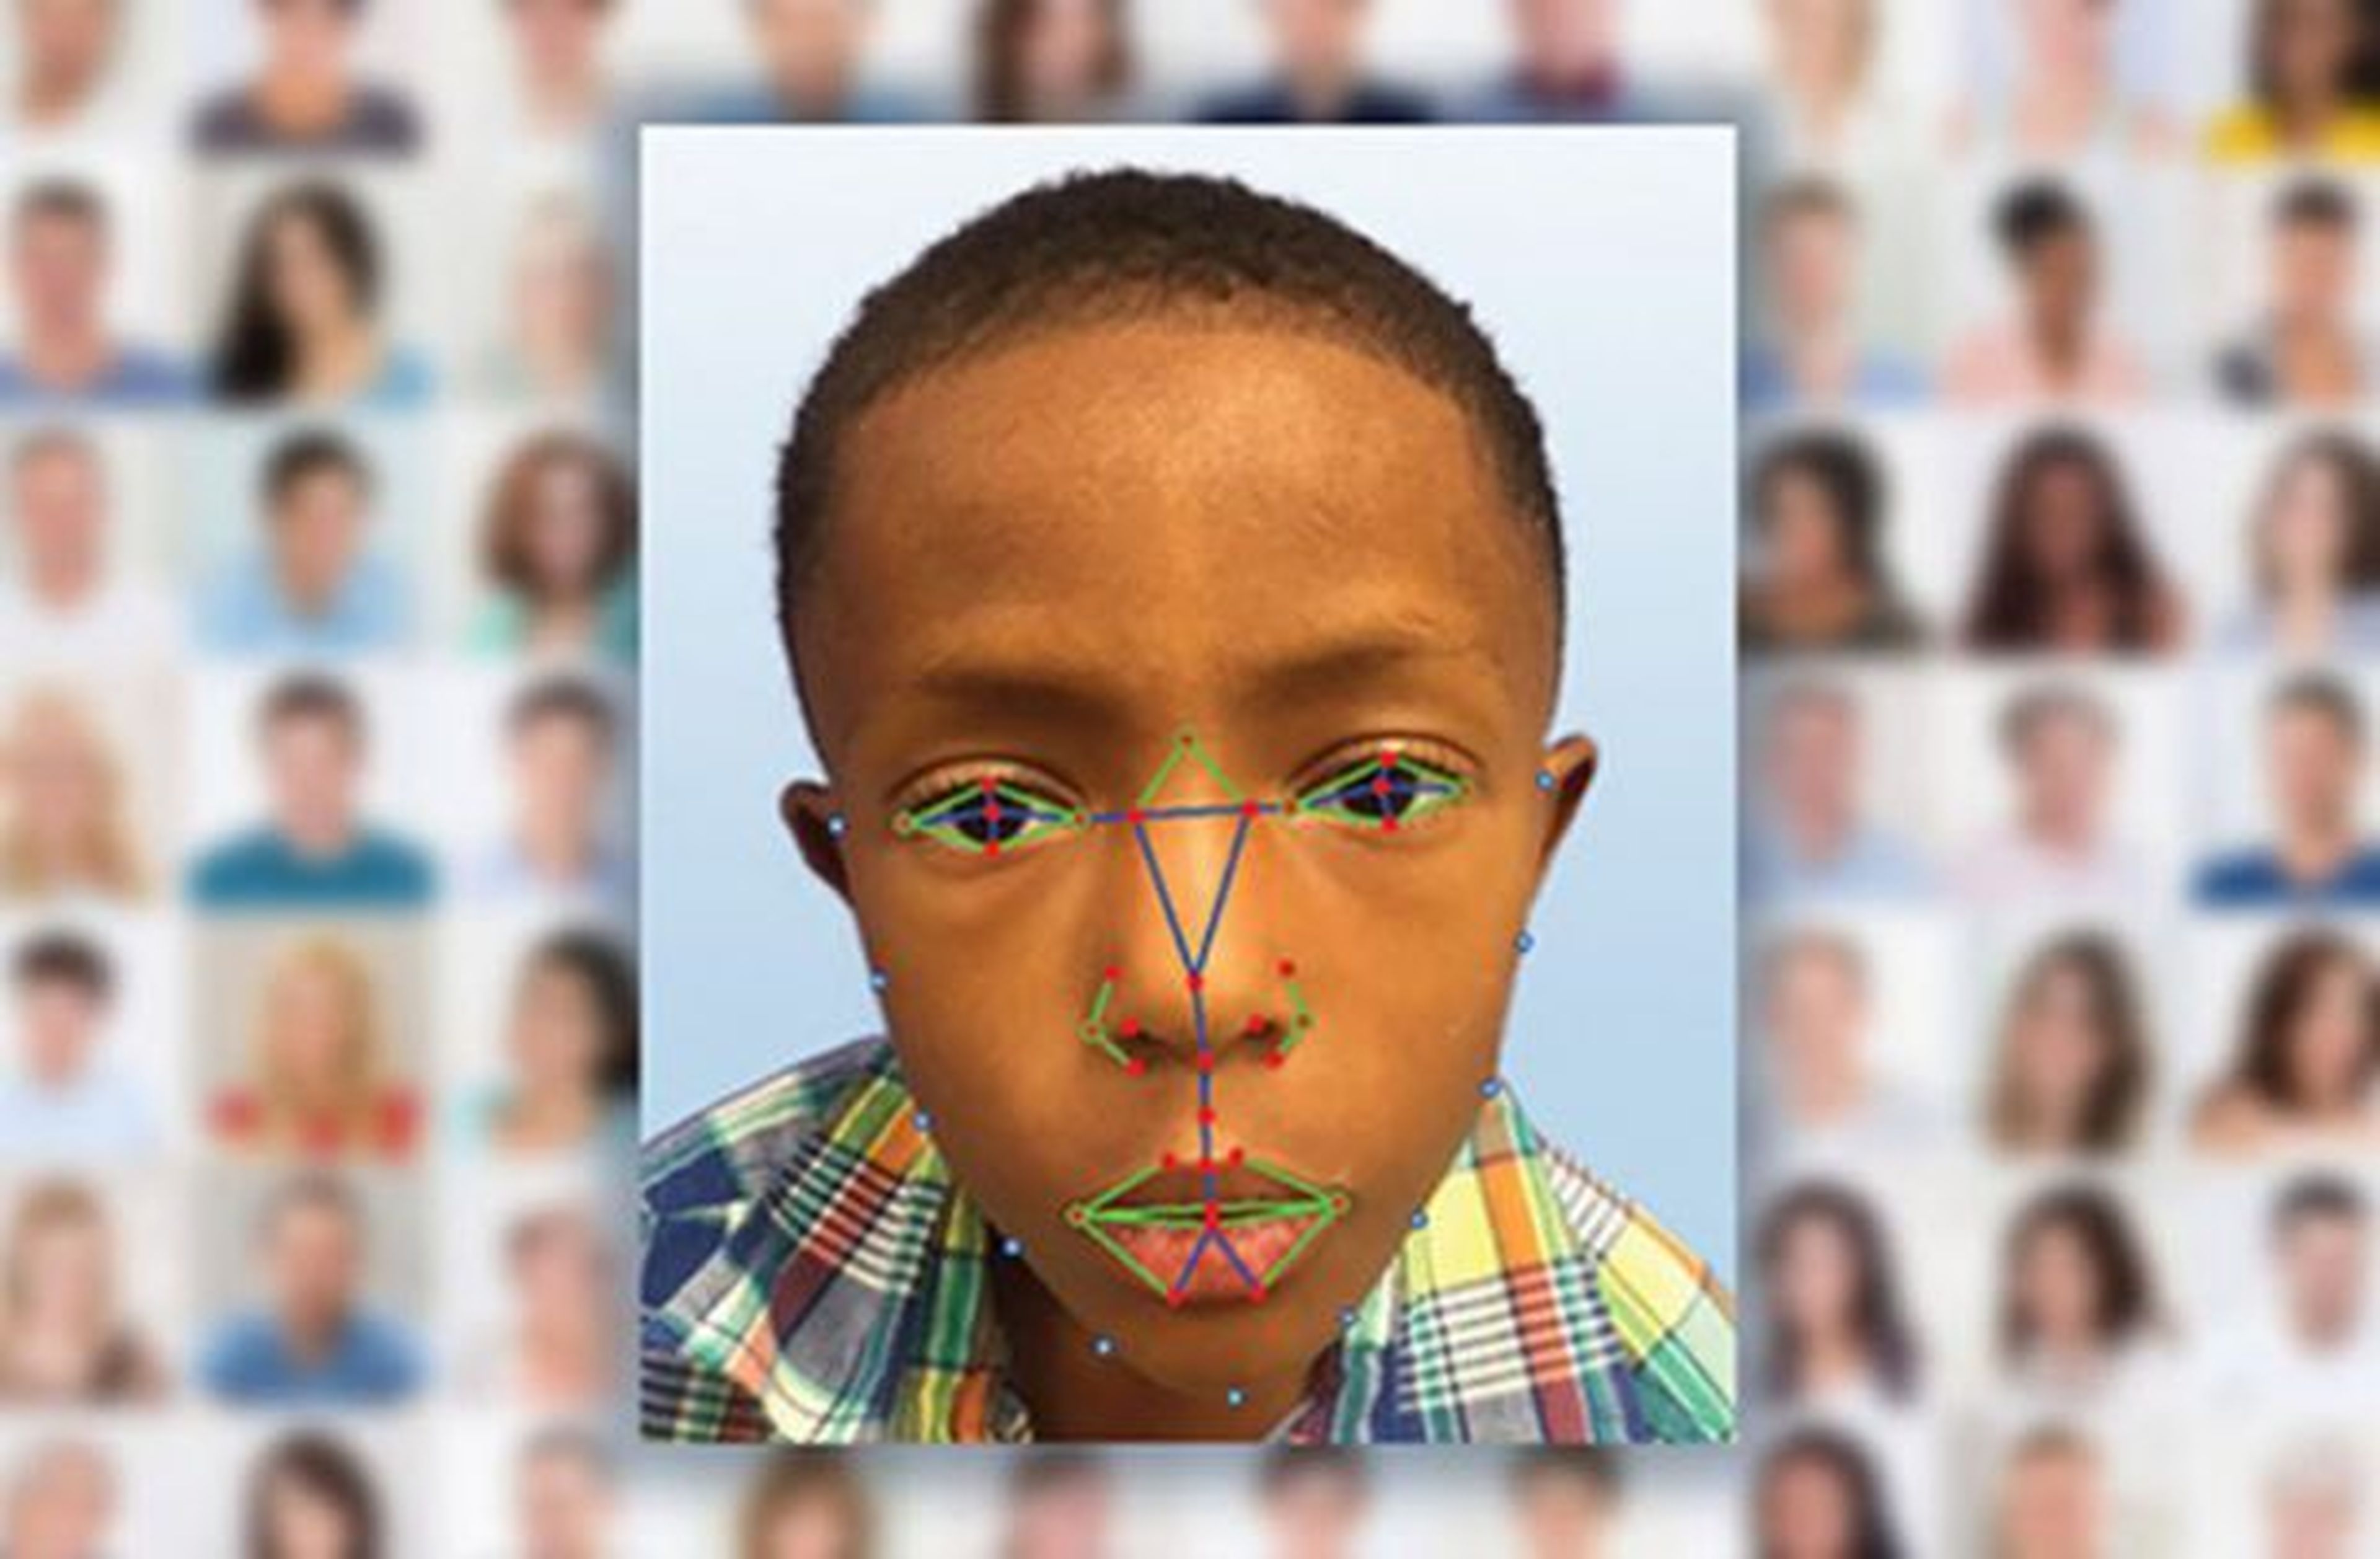 El reconocimiento facial ayudará a detectar enfermedades genéticas